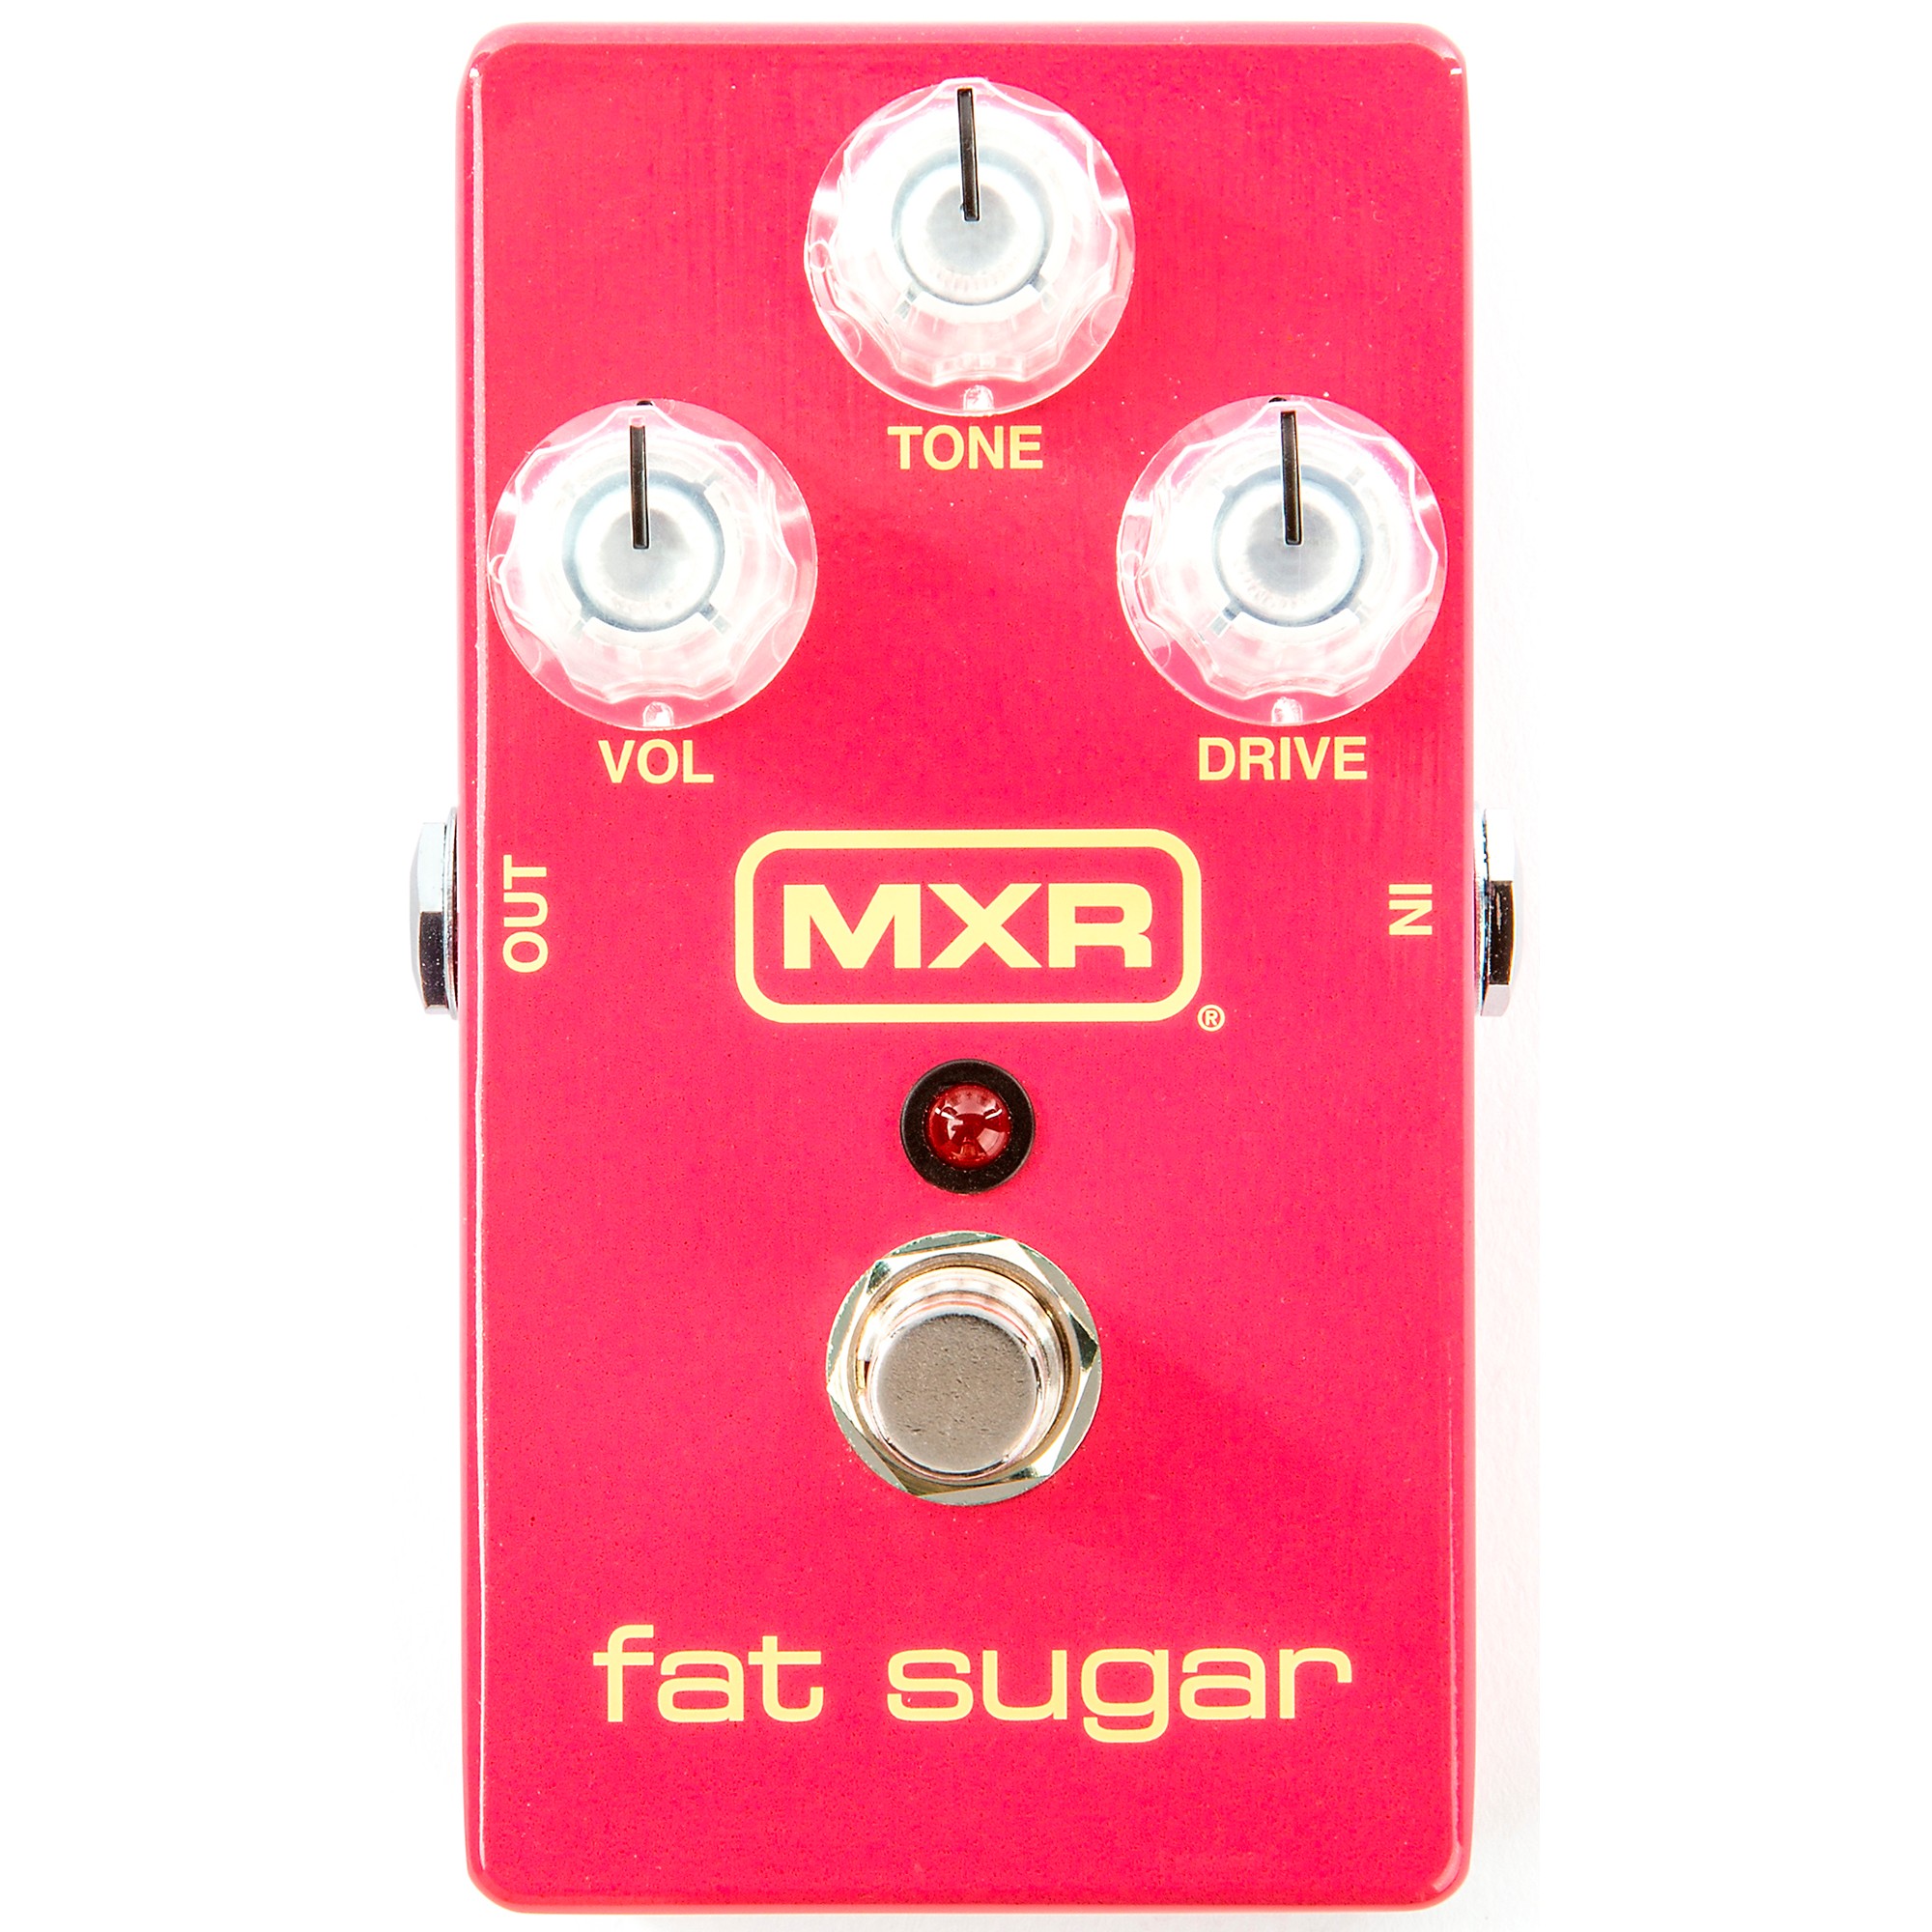 MXR Fat Sugar Drive Effects Pedal Pink